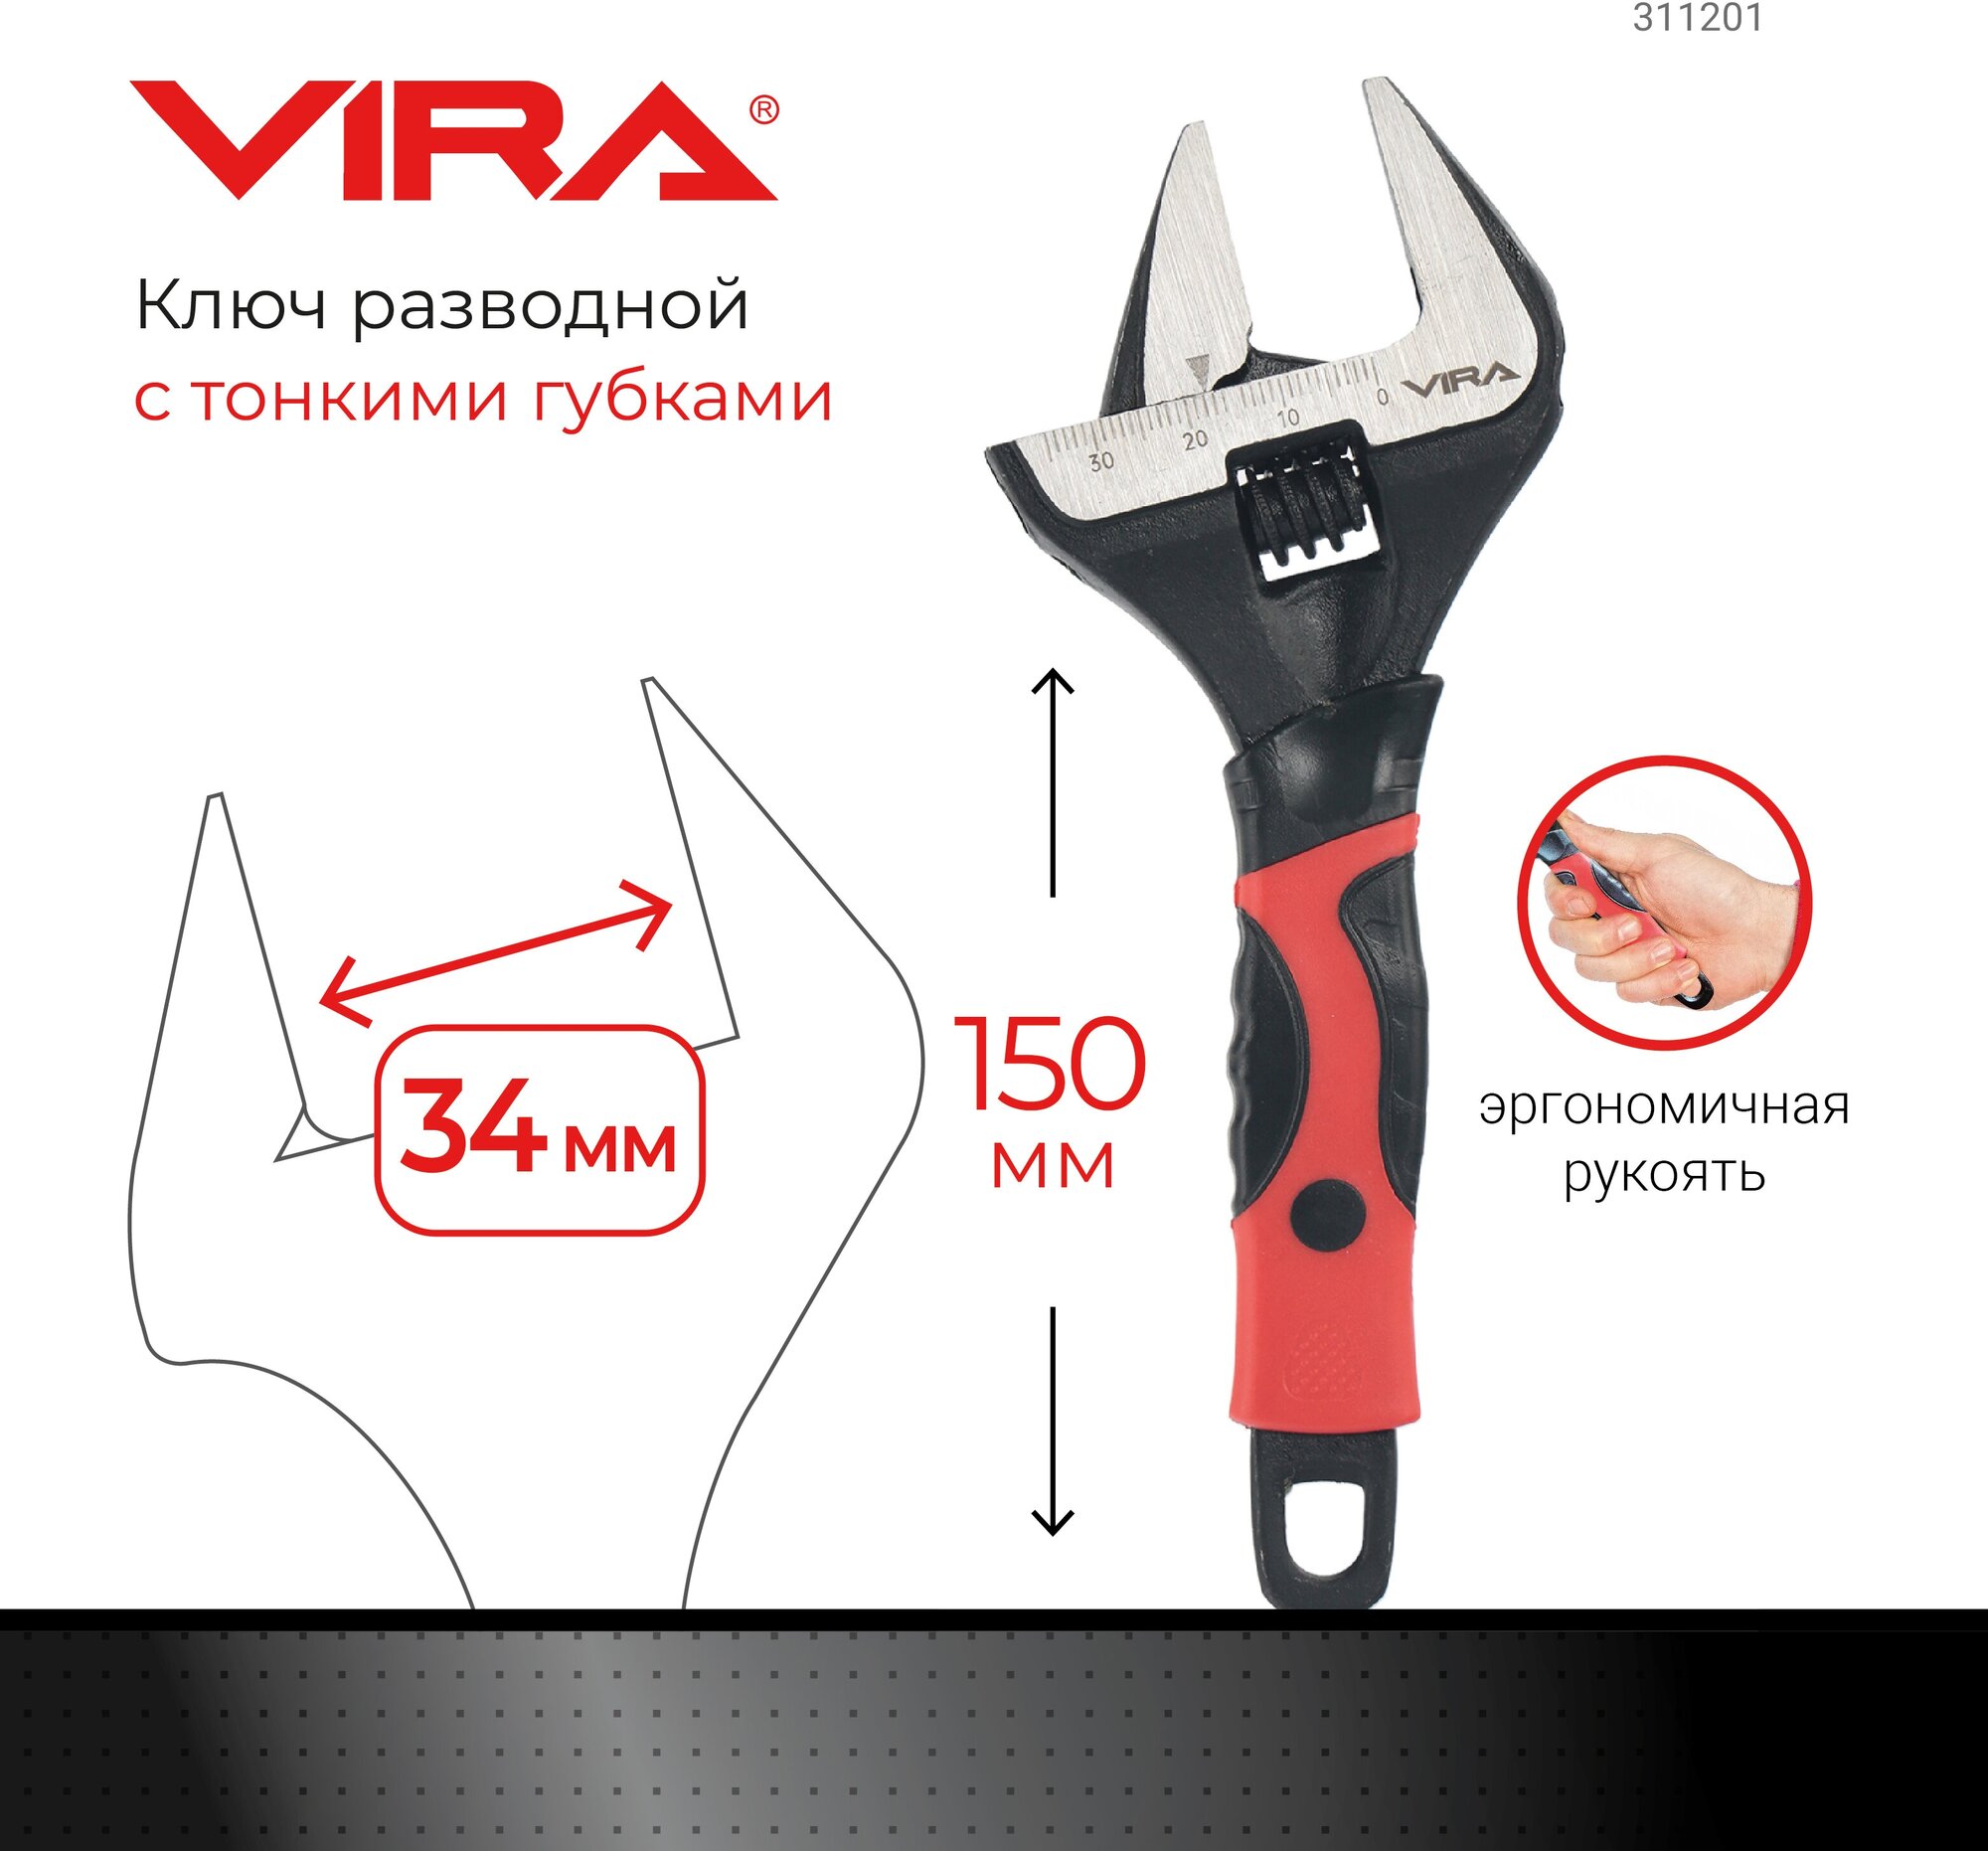 Vira ключ разводной с тонким губками 150 мм 311201 .